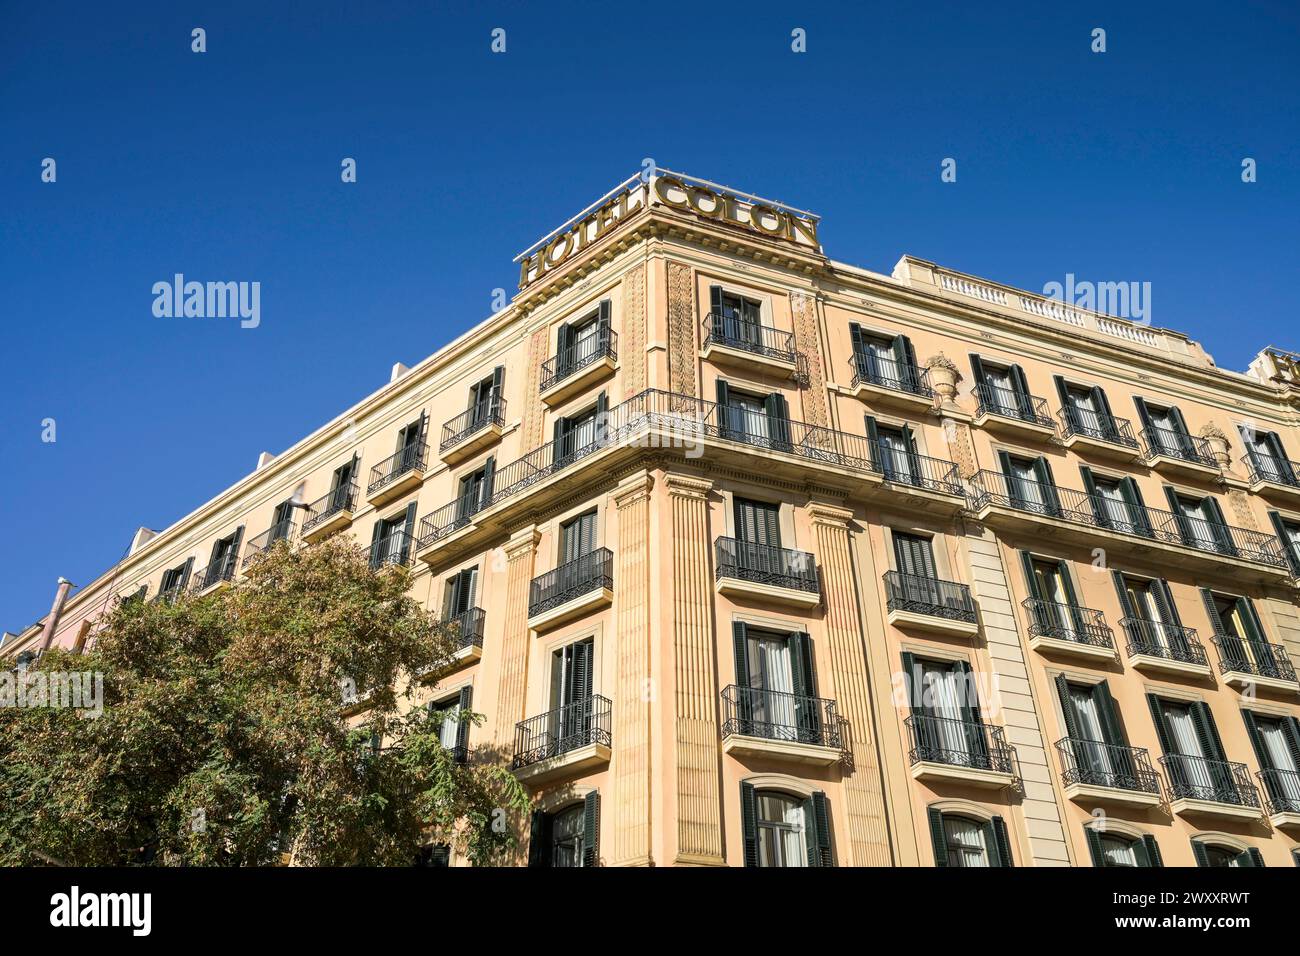 Hotel Colon, Av. de la Catedral, Barcelona, Catalonia, Spain Stock Photo